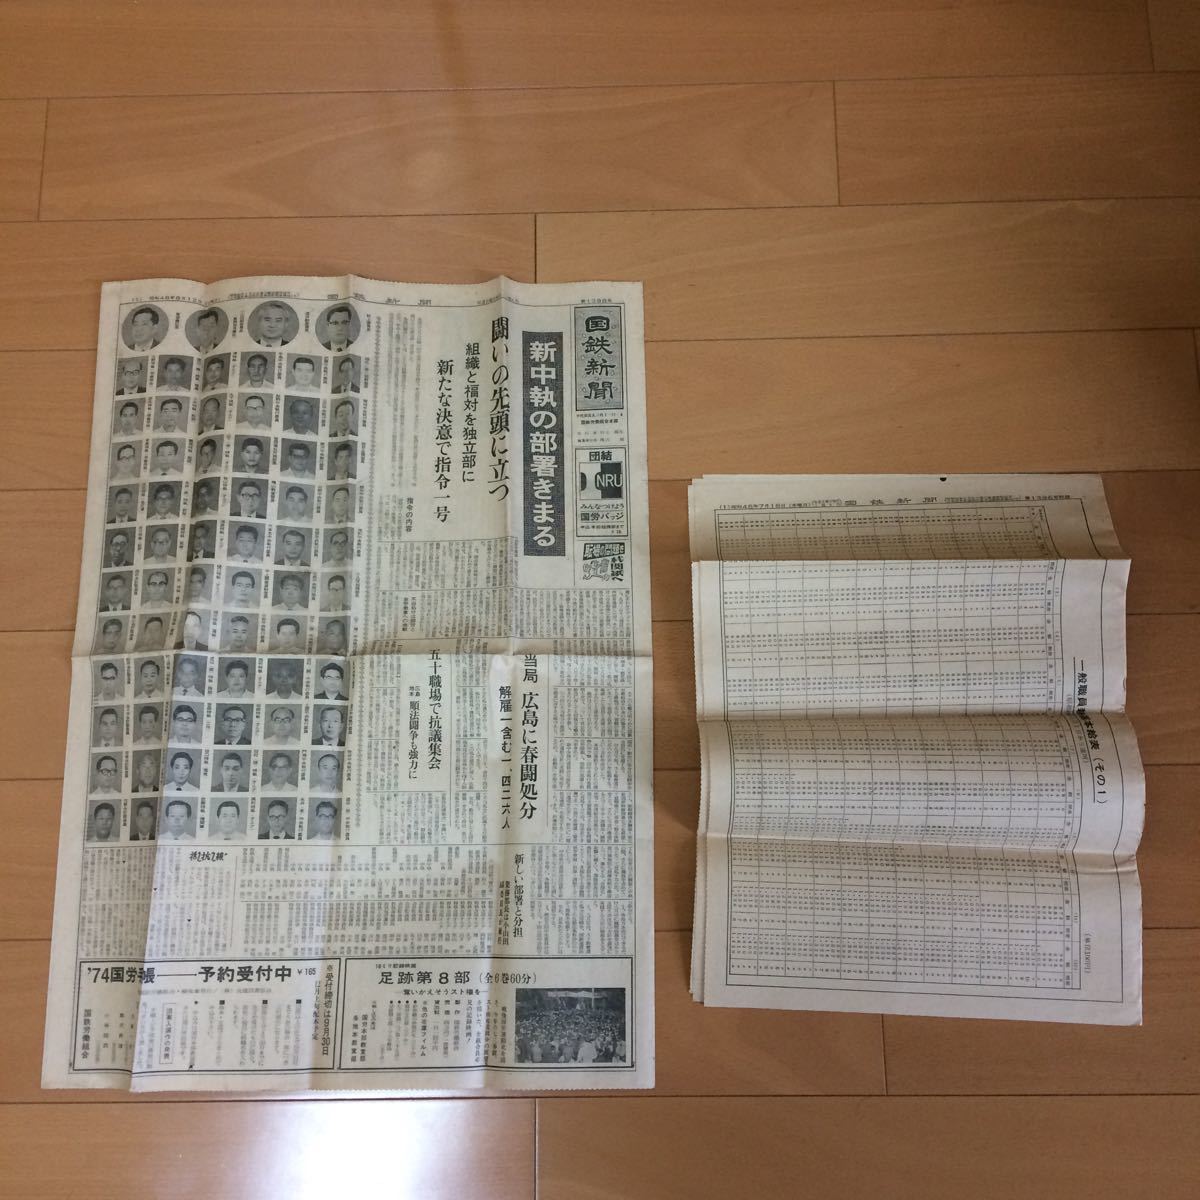 JNR JNR Shimbun 12 августа 1971 г. Издание 18 июля, издание персонал Базовый таблица заработной платы редкие материалы ретро